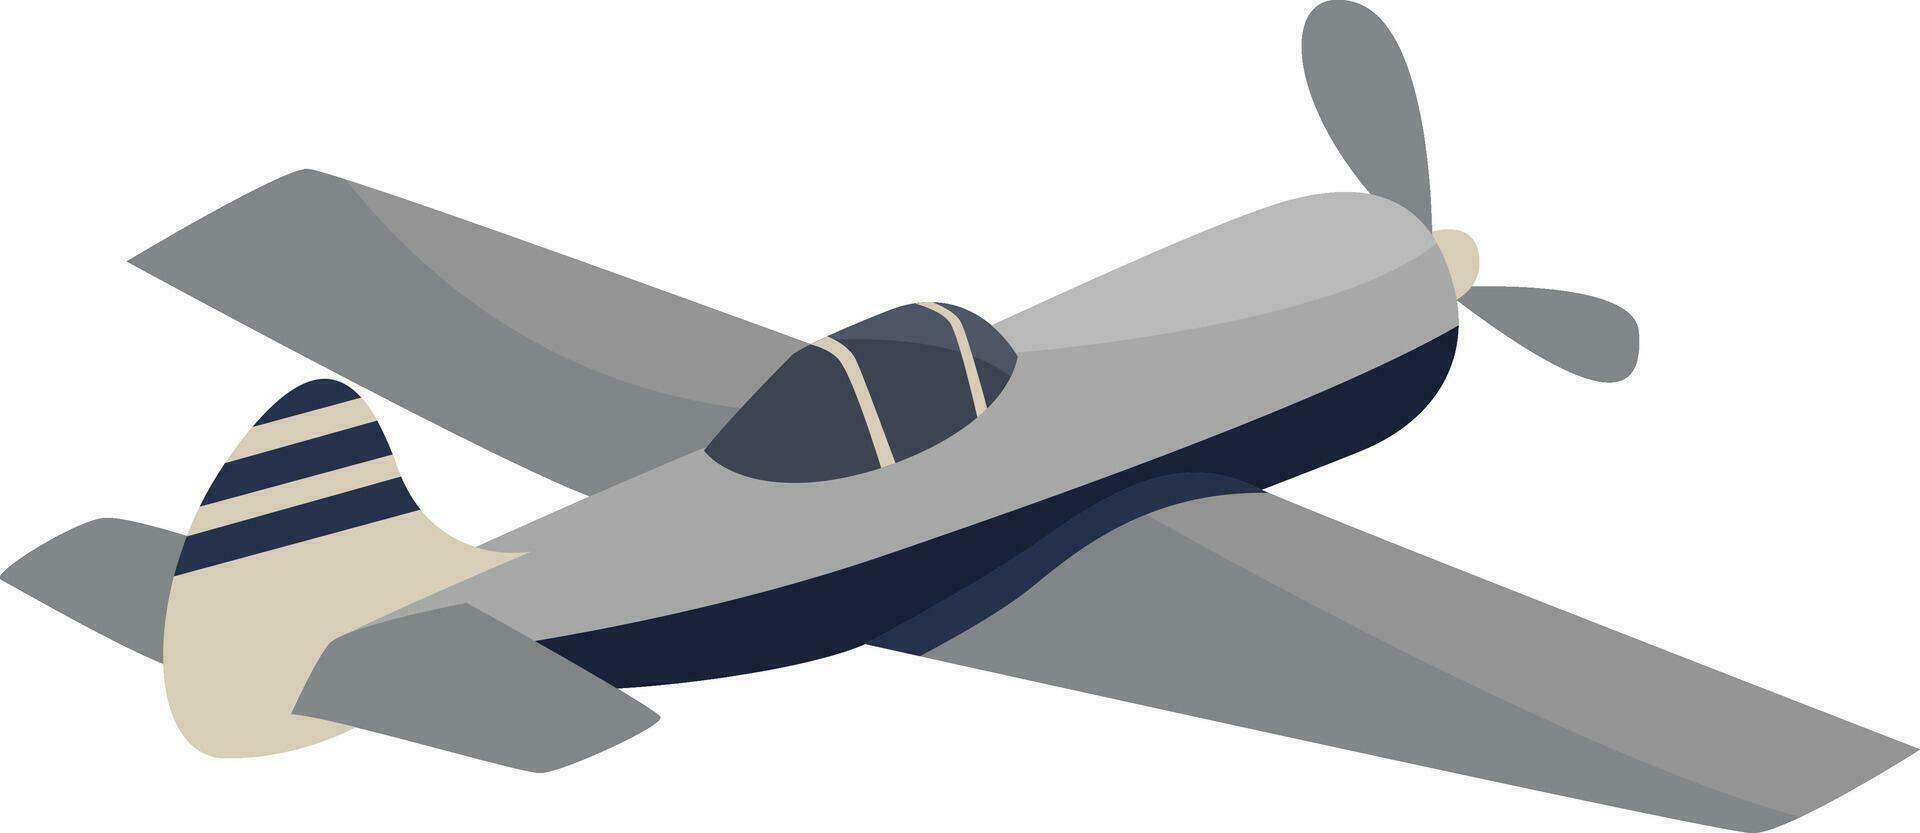 monoplan flygande, illustration, vektor på vit bakgrund